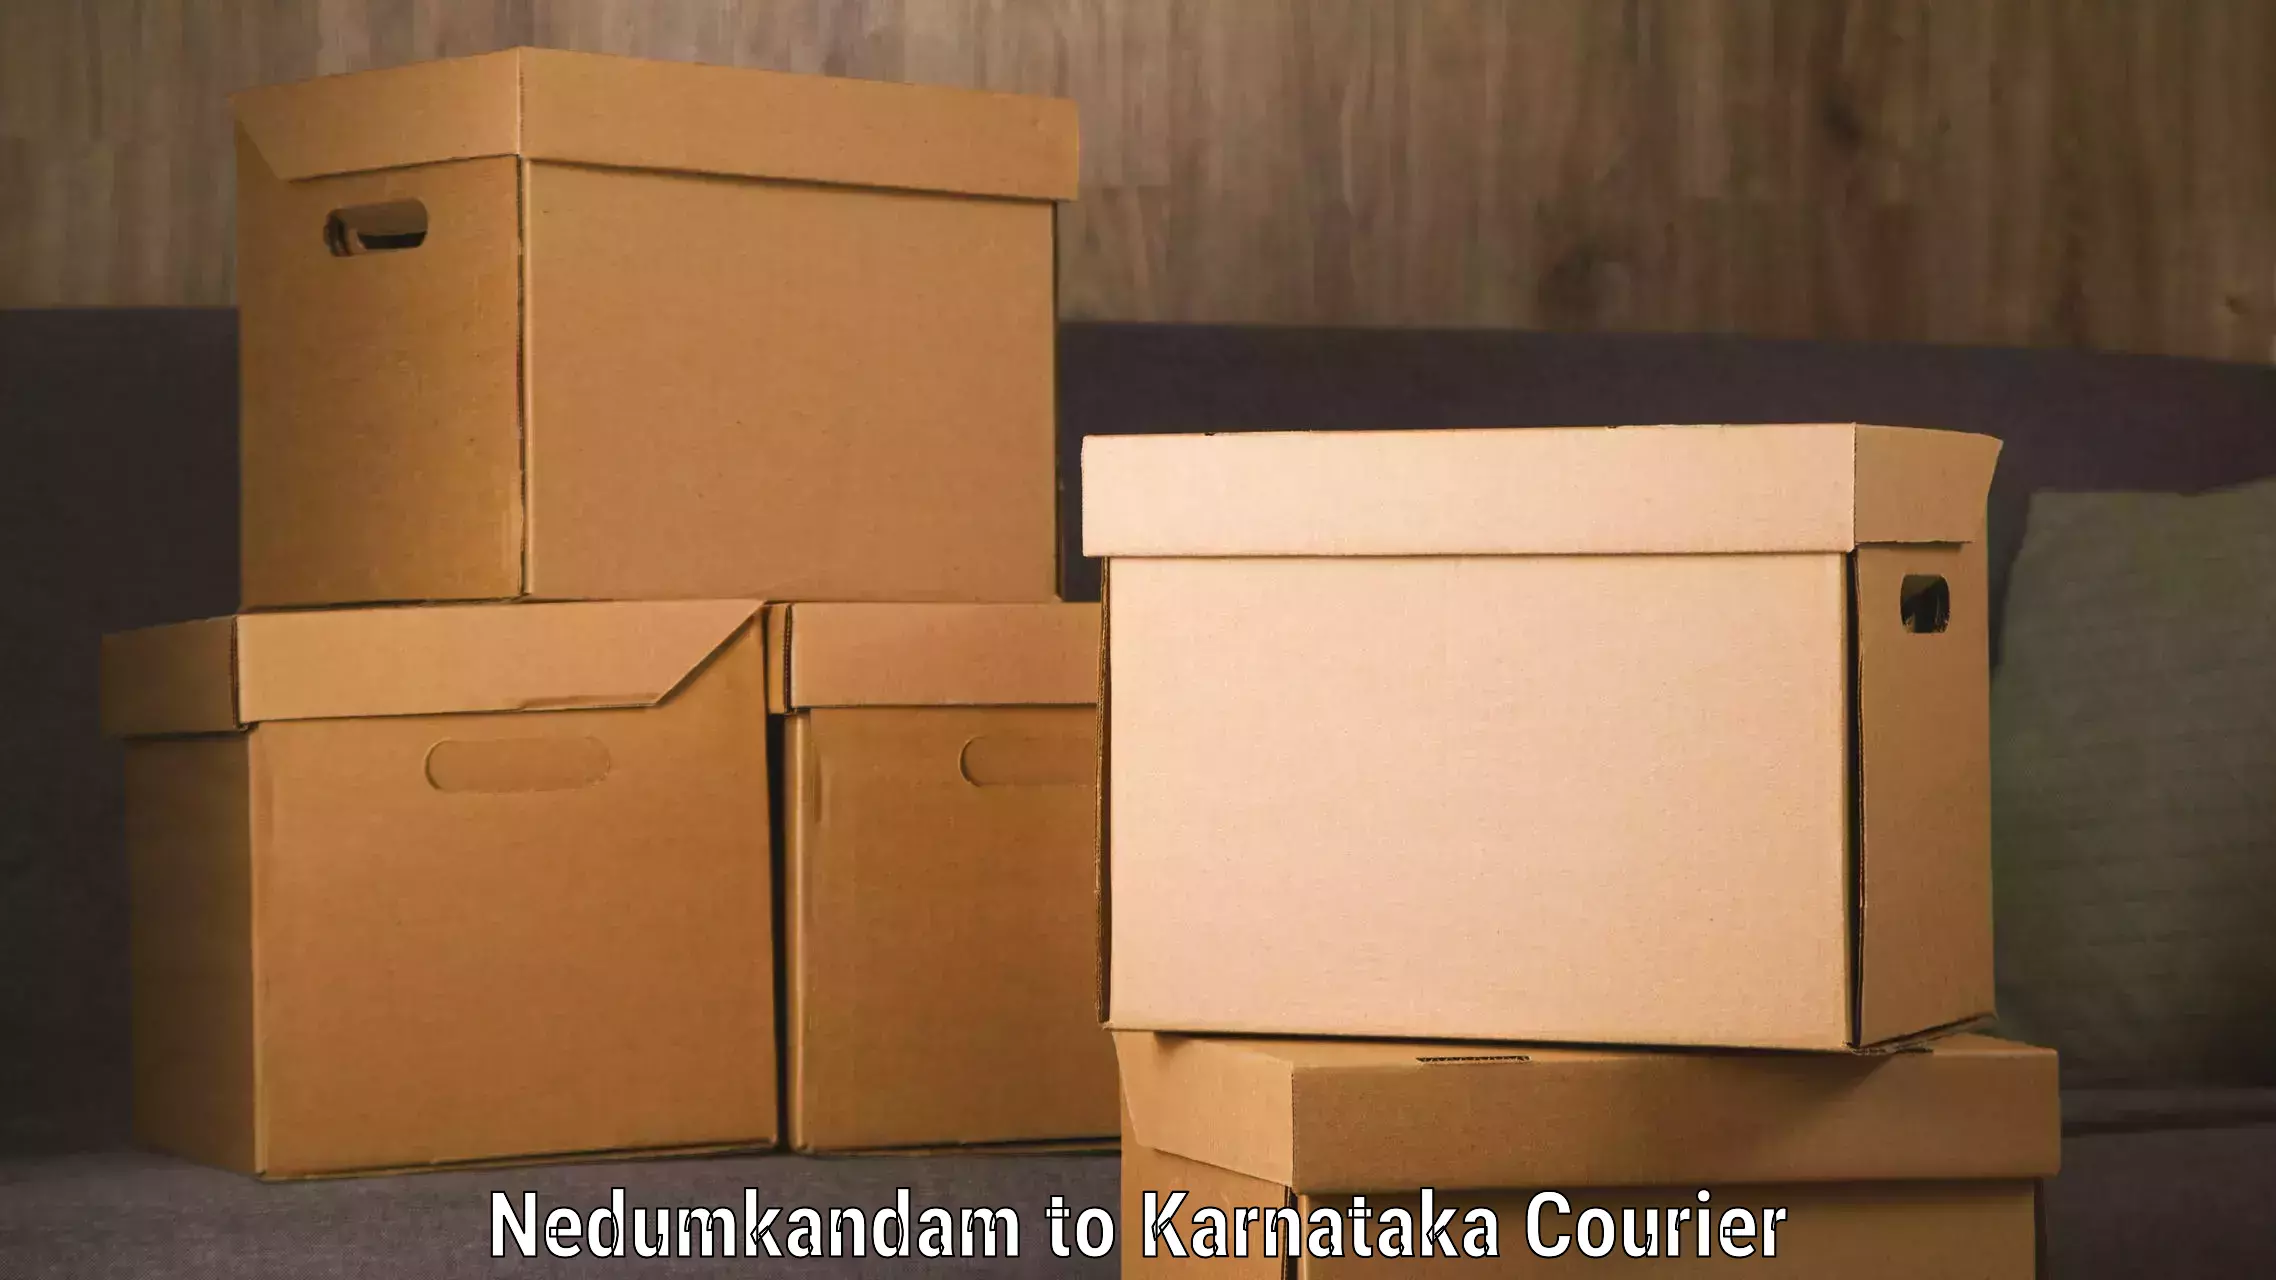 Global shipping solutions Nedumkandam to IIT Dharwad